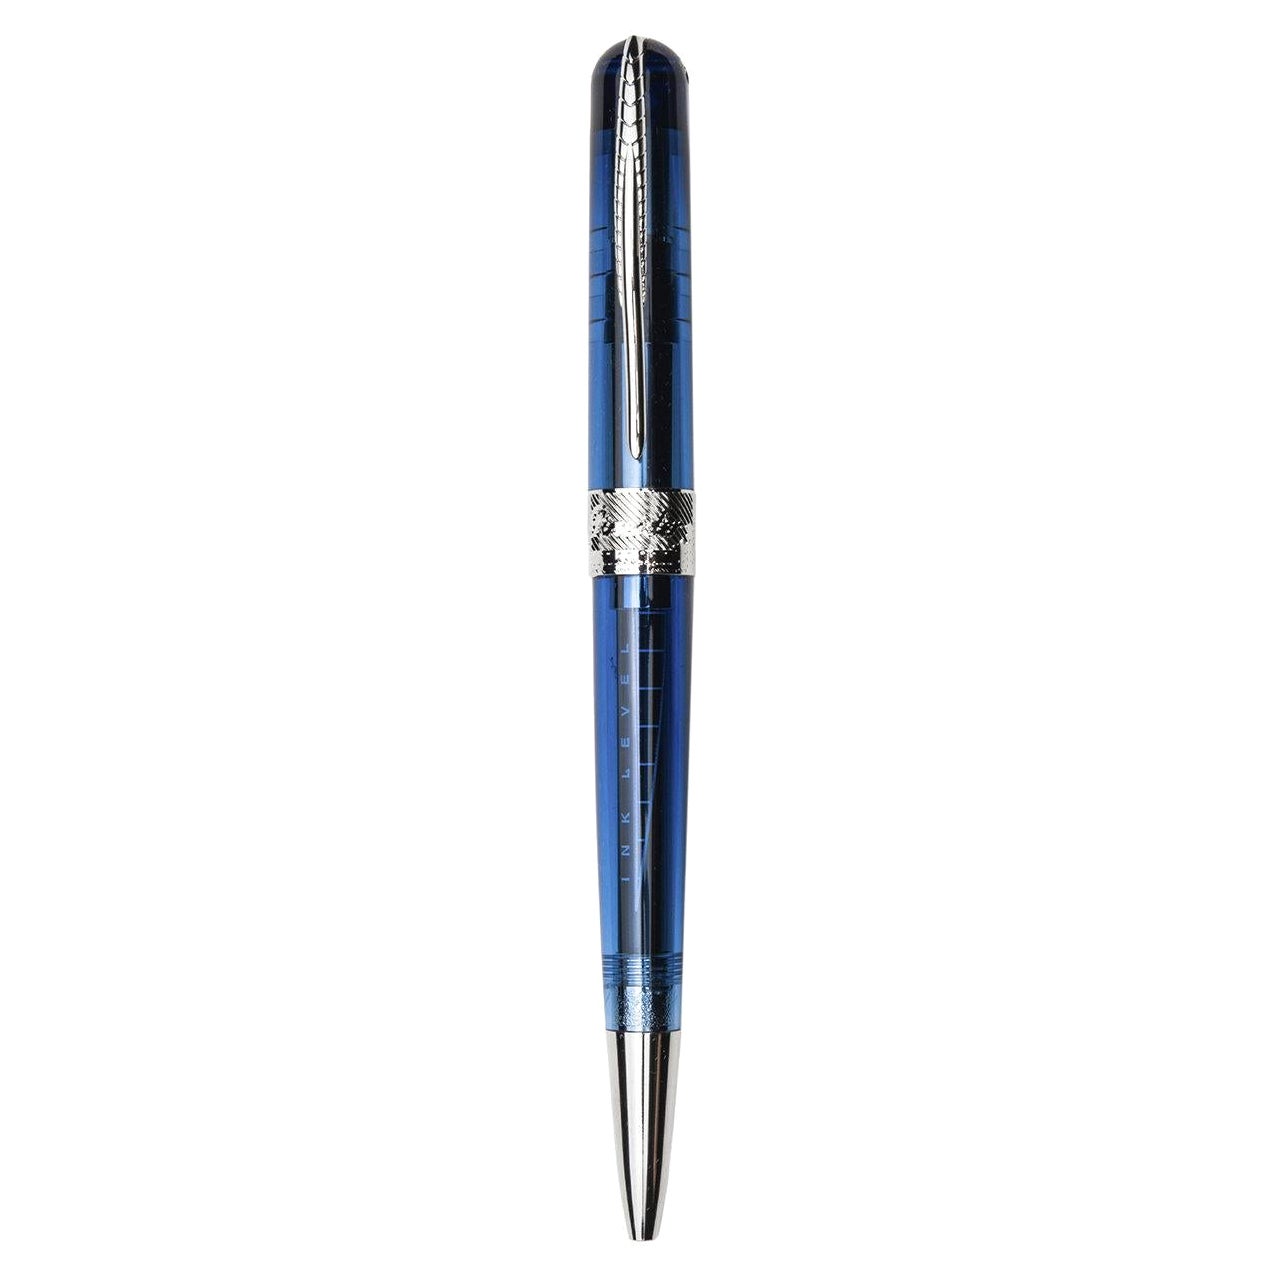 Avatar UR Blauer Kugelschreiber